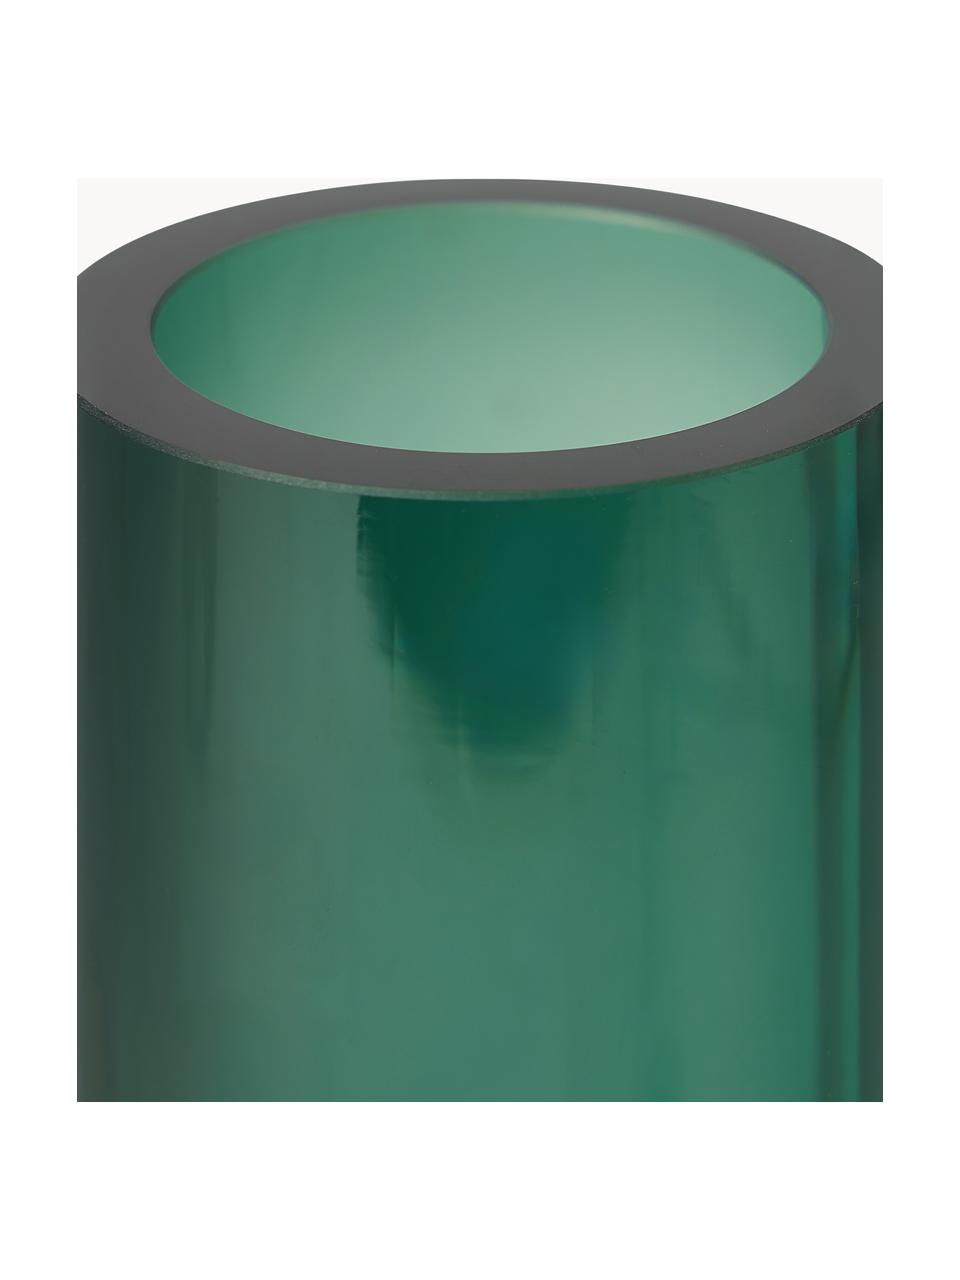 Jarrón soplado Nicola, 22 cm, Vidrio de cal sodada, Verde oscuro transparente, Ø 8 x Al 22 cm